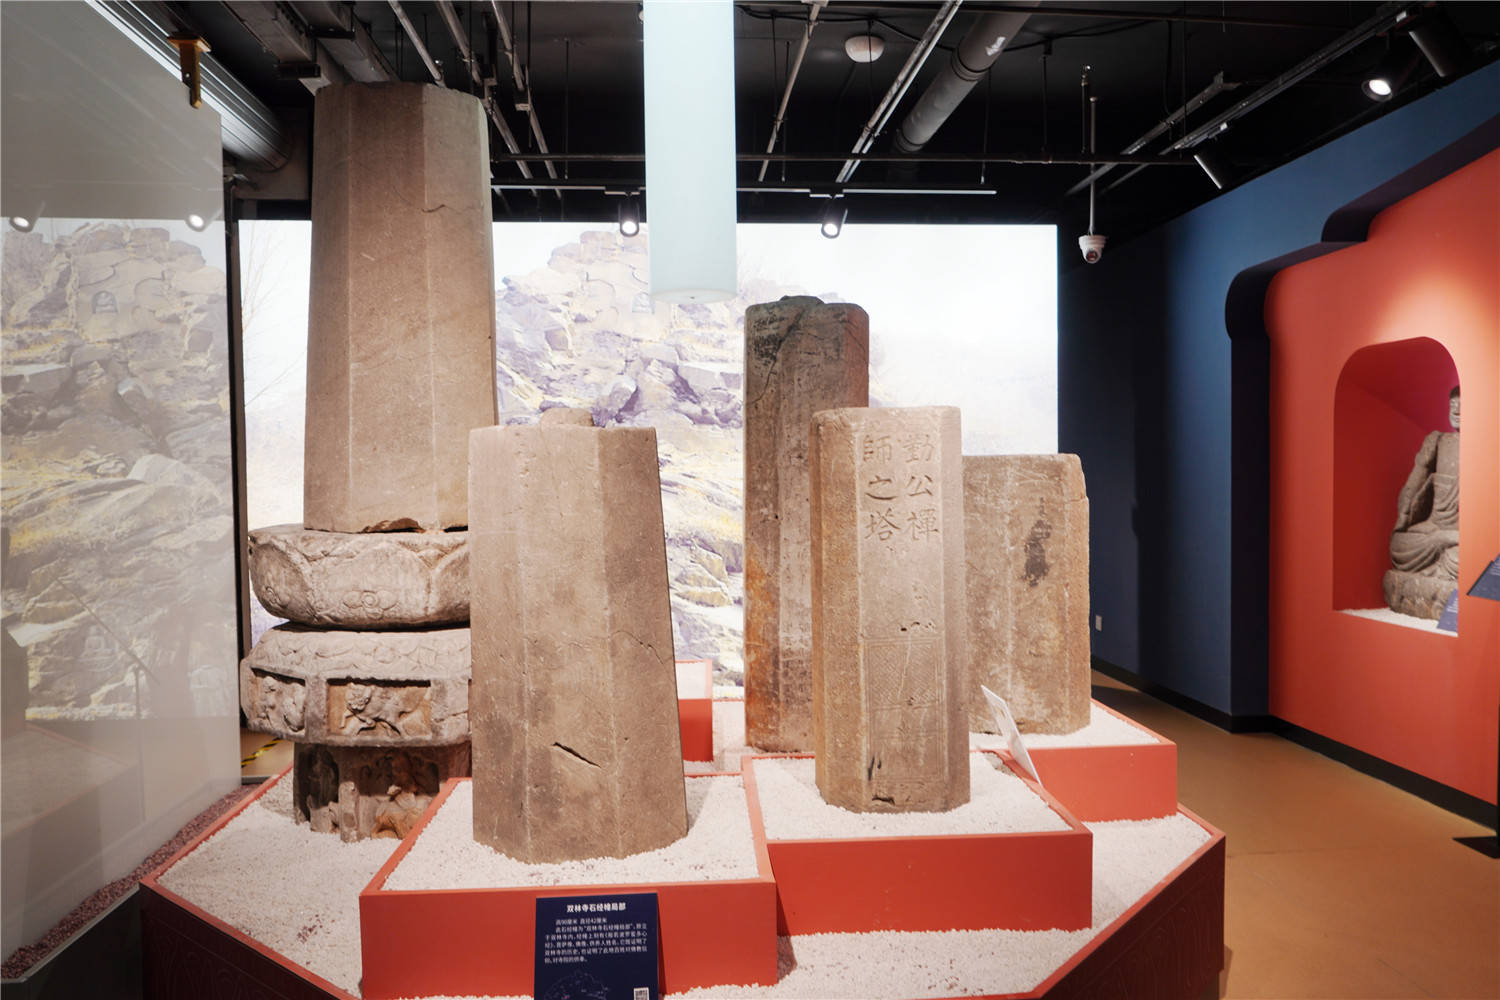 走进永定河文化博物馆,来看西山铭记 永定石语——永定河文化博物馆